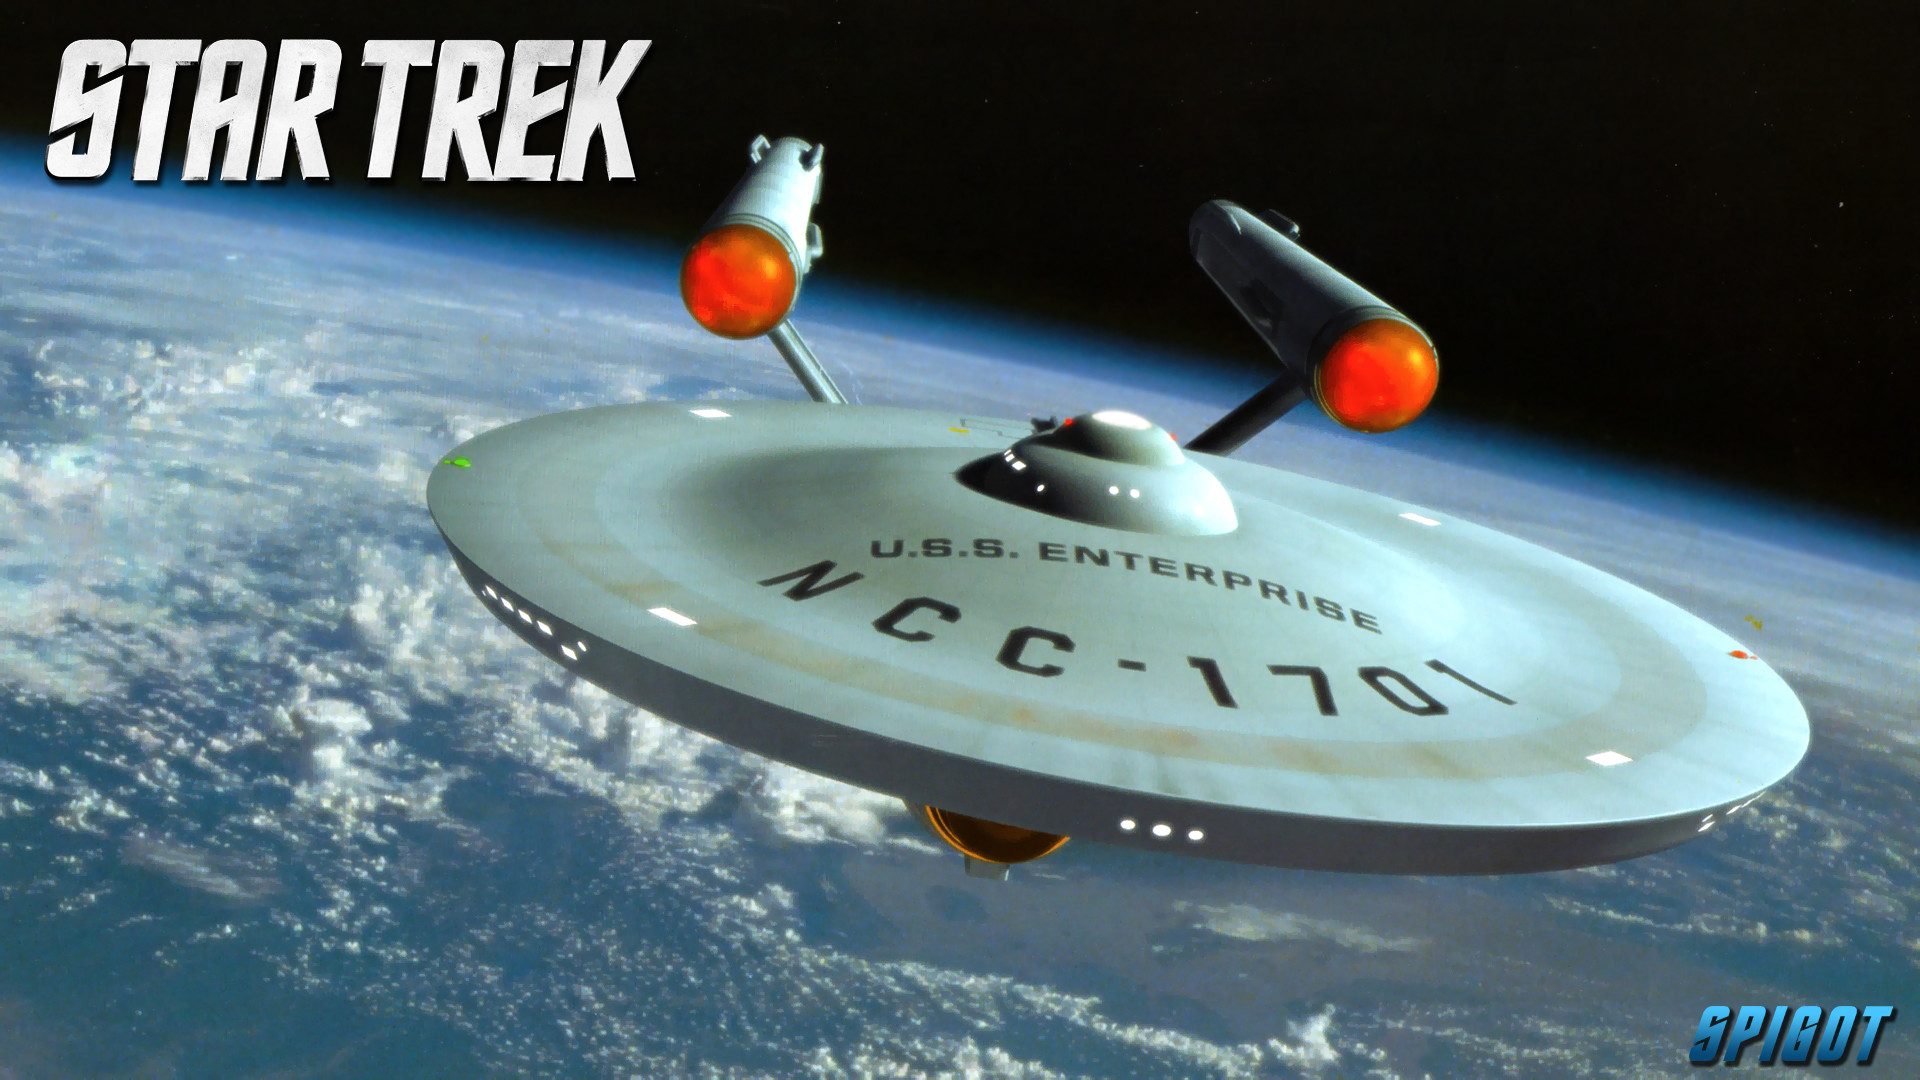 Star Trek Ships Wallpapers. June 8, 2012. Here …